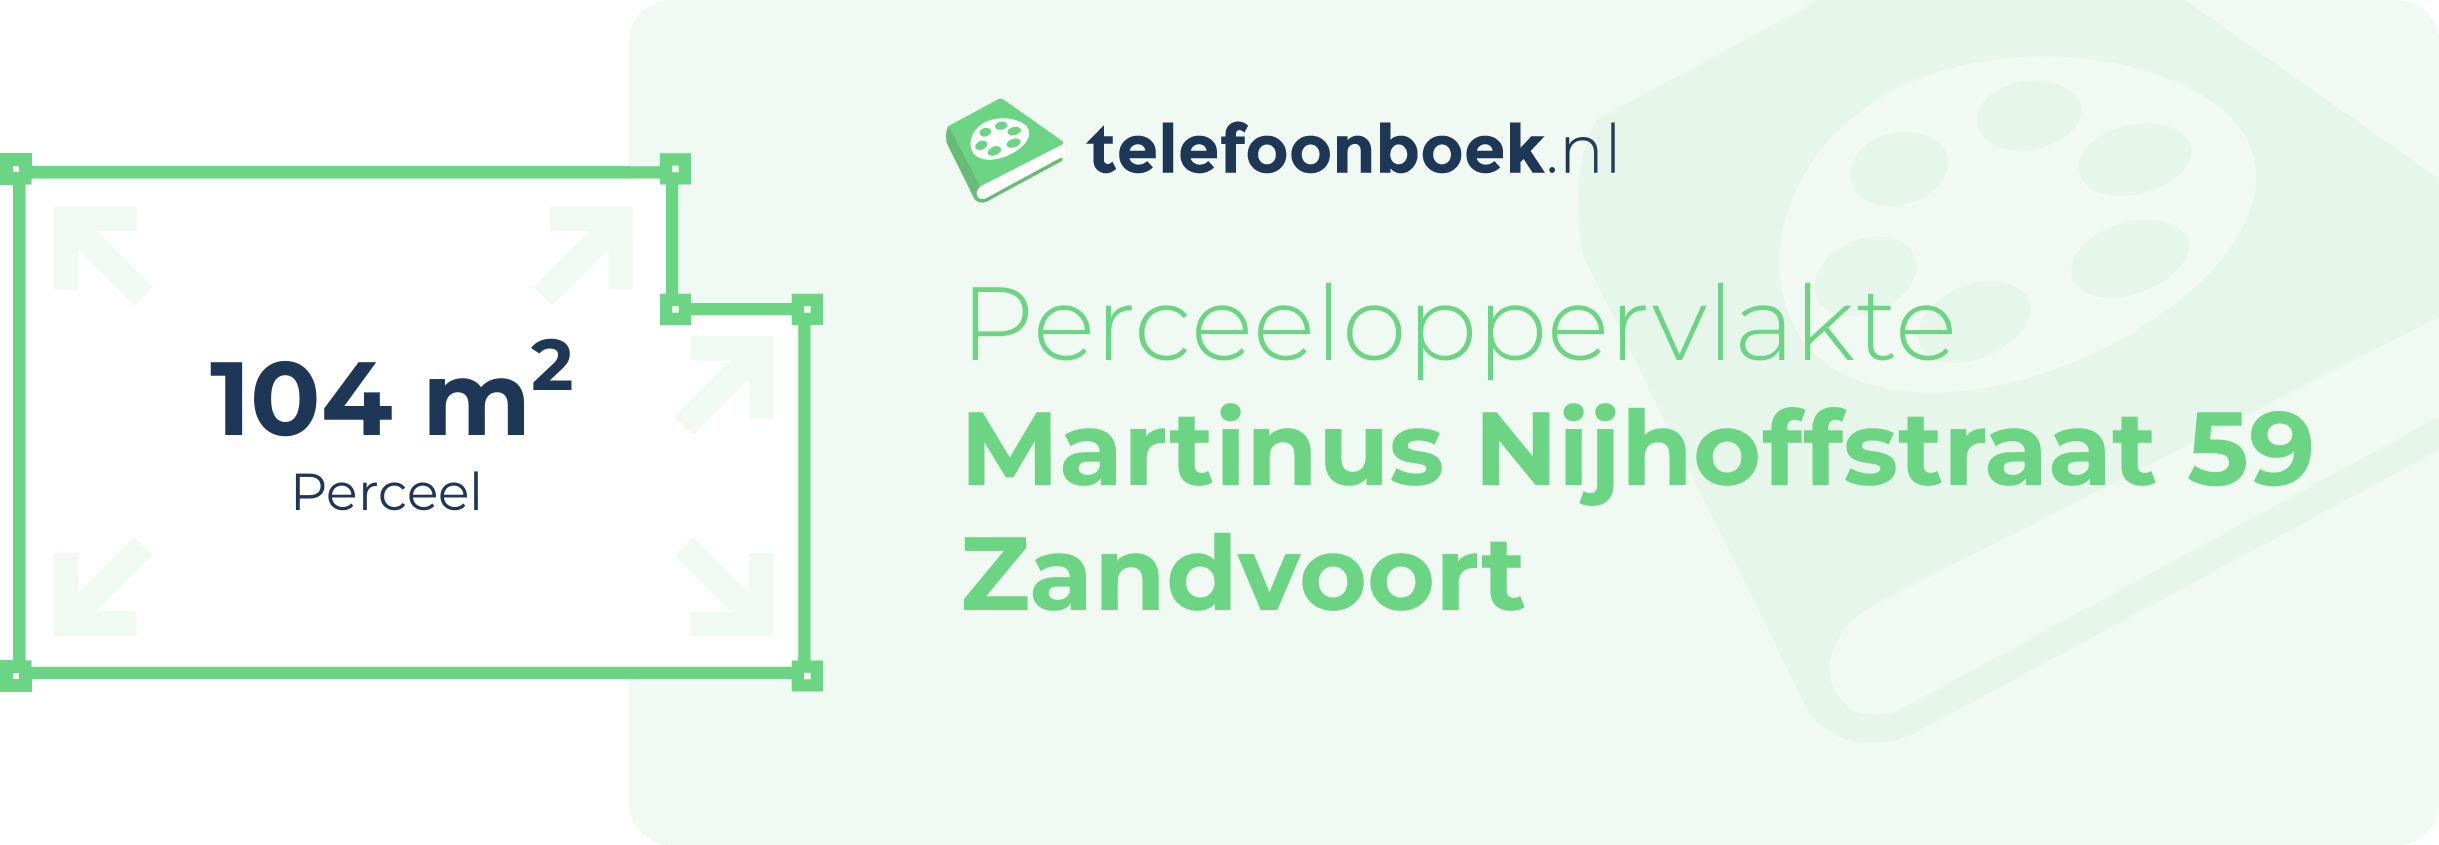 Perceeloppervlakte Martinus Nijhoffstraat 59 Zandvoort